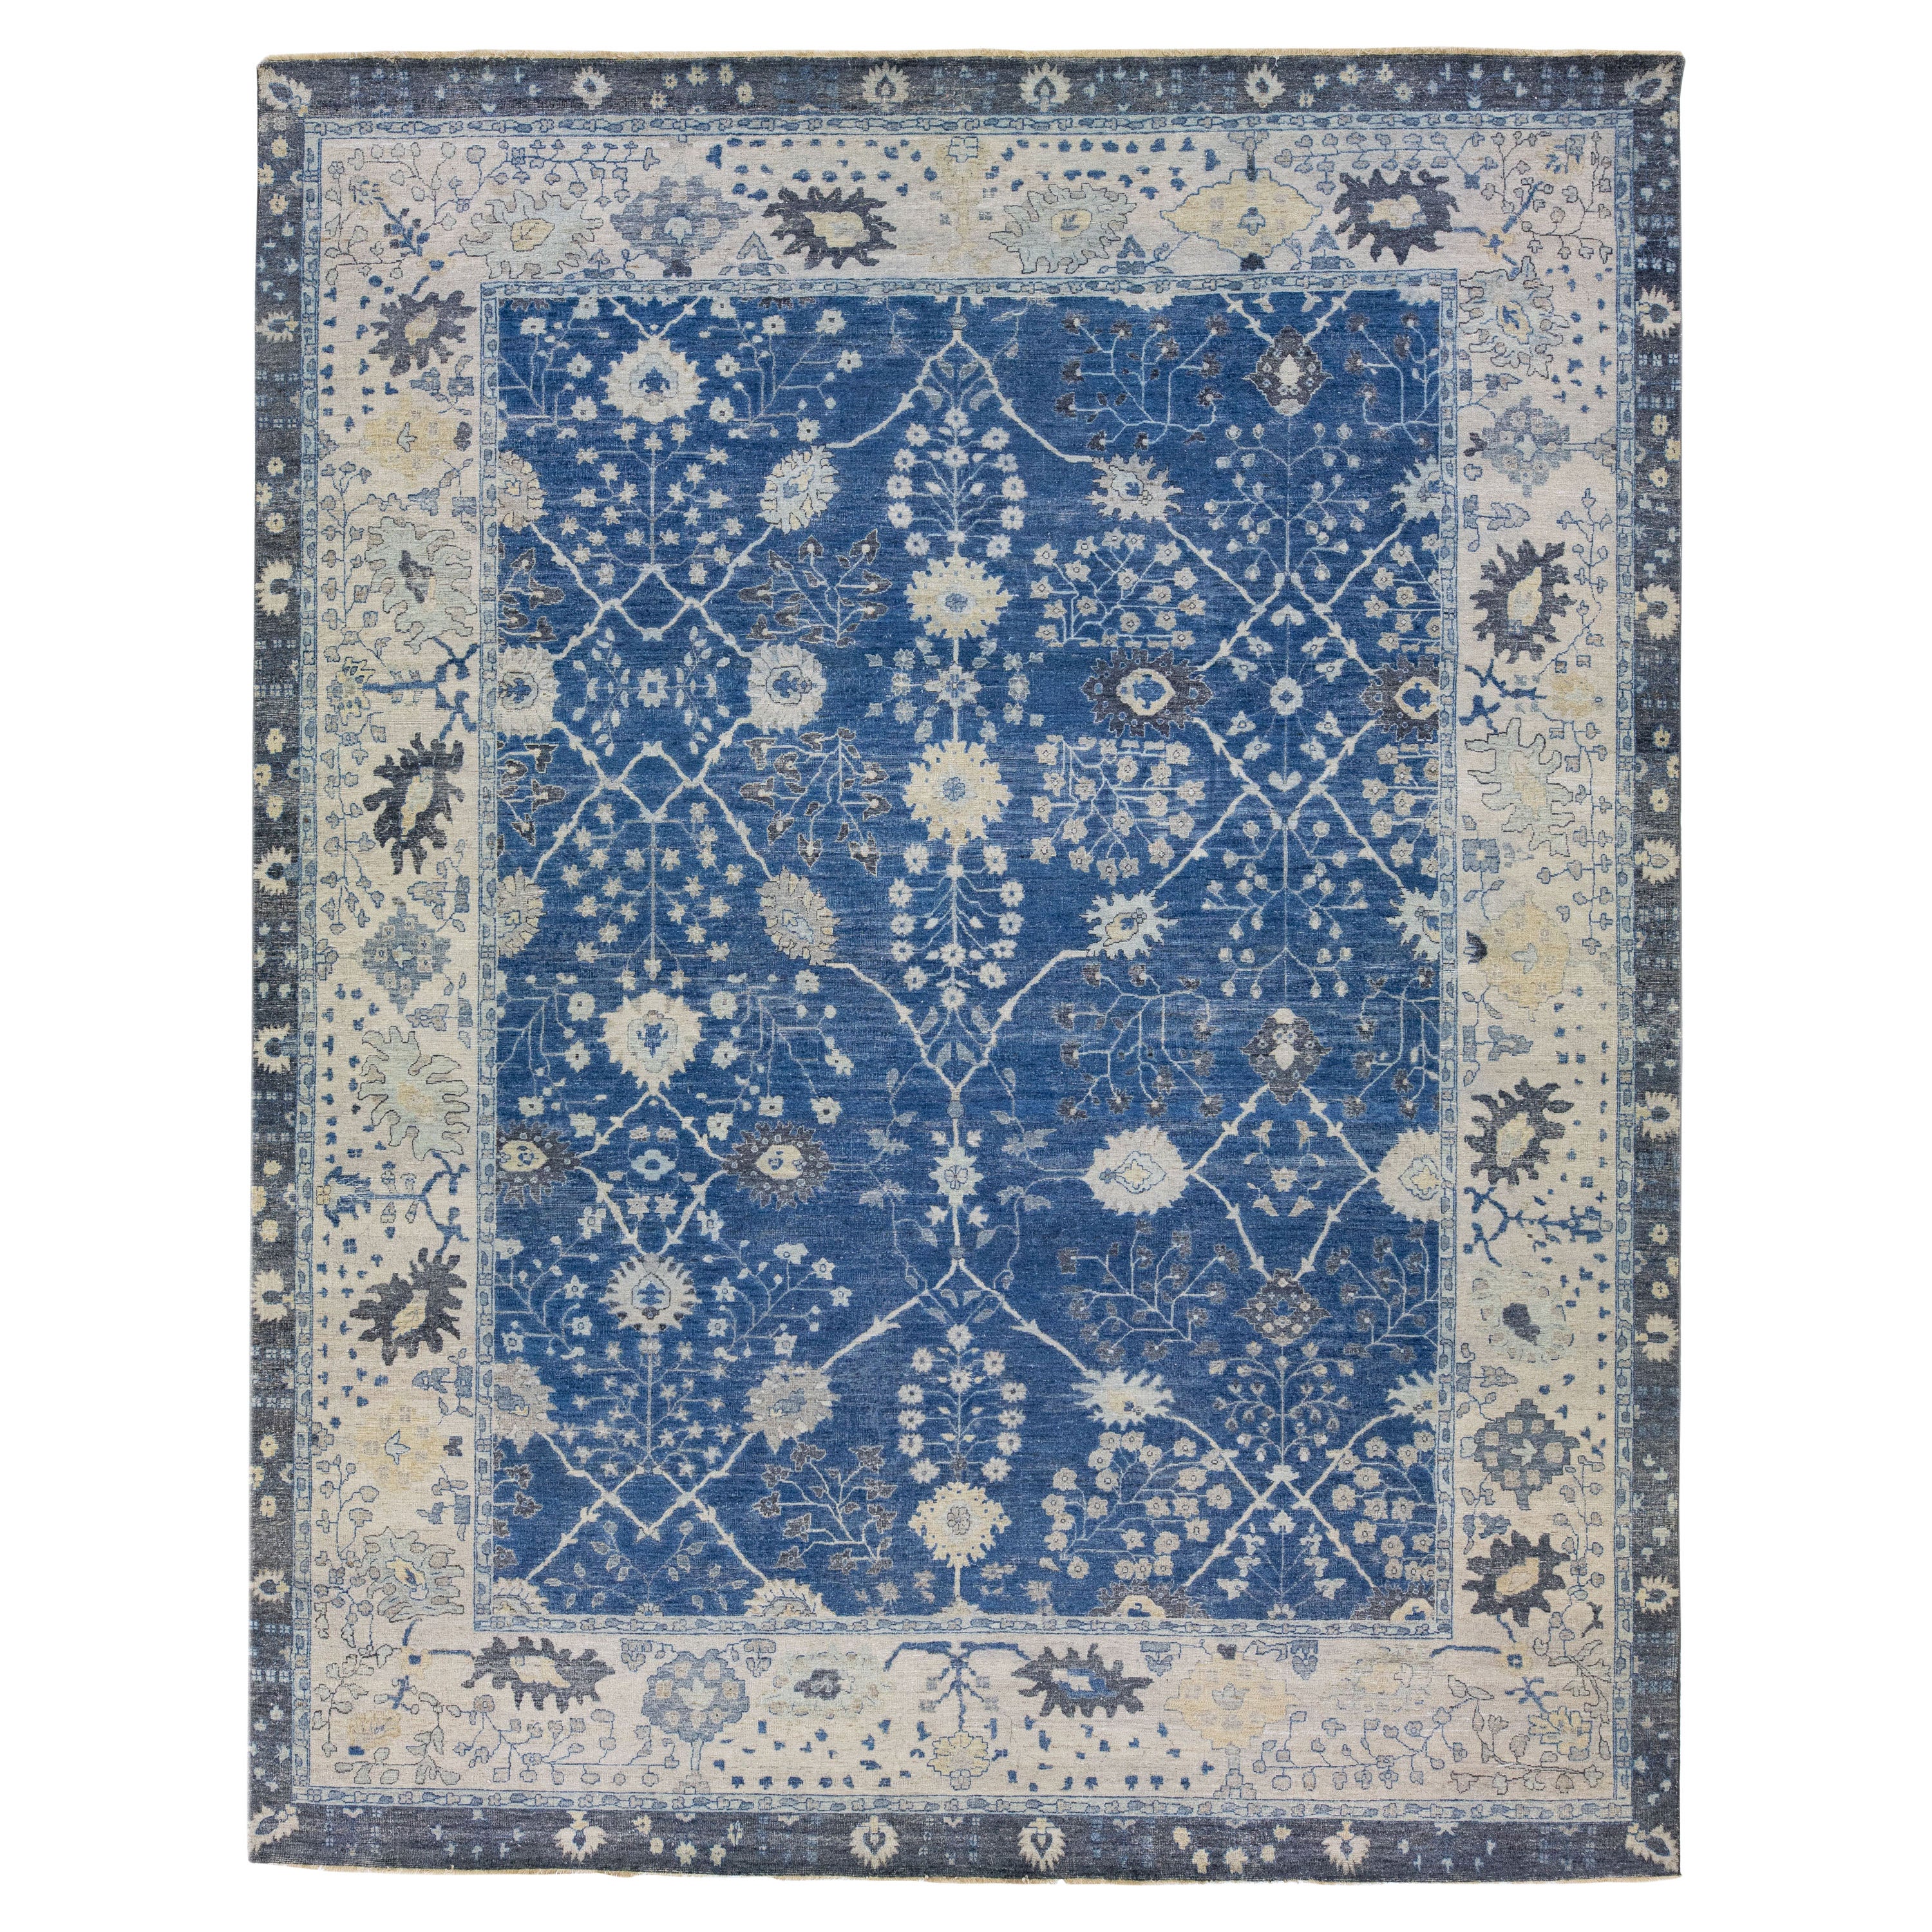 Apadana's Artisan Collection Blauer handgefertigter geblümter Teppich aus indischer Wolle